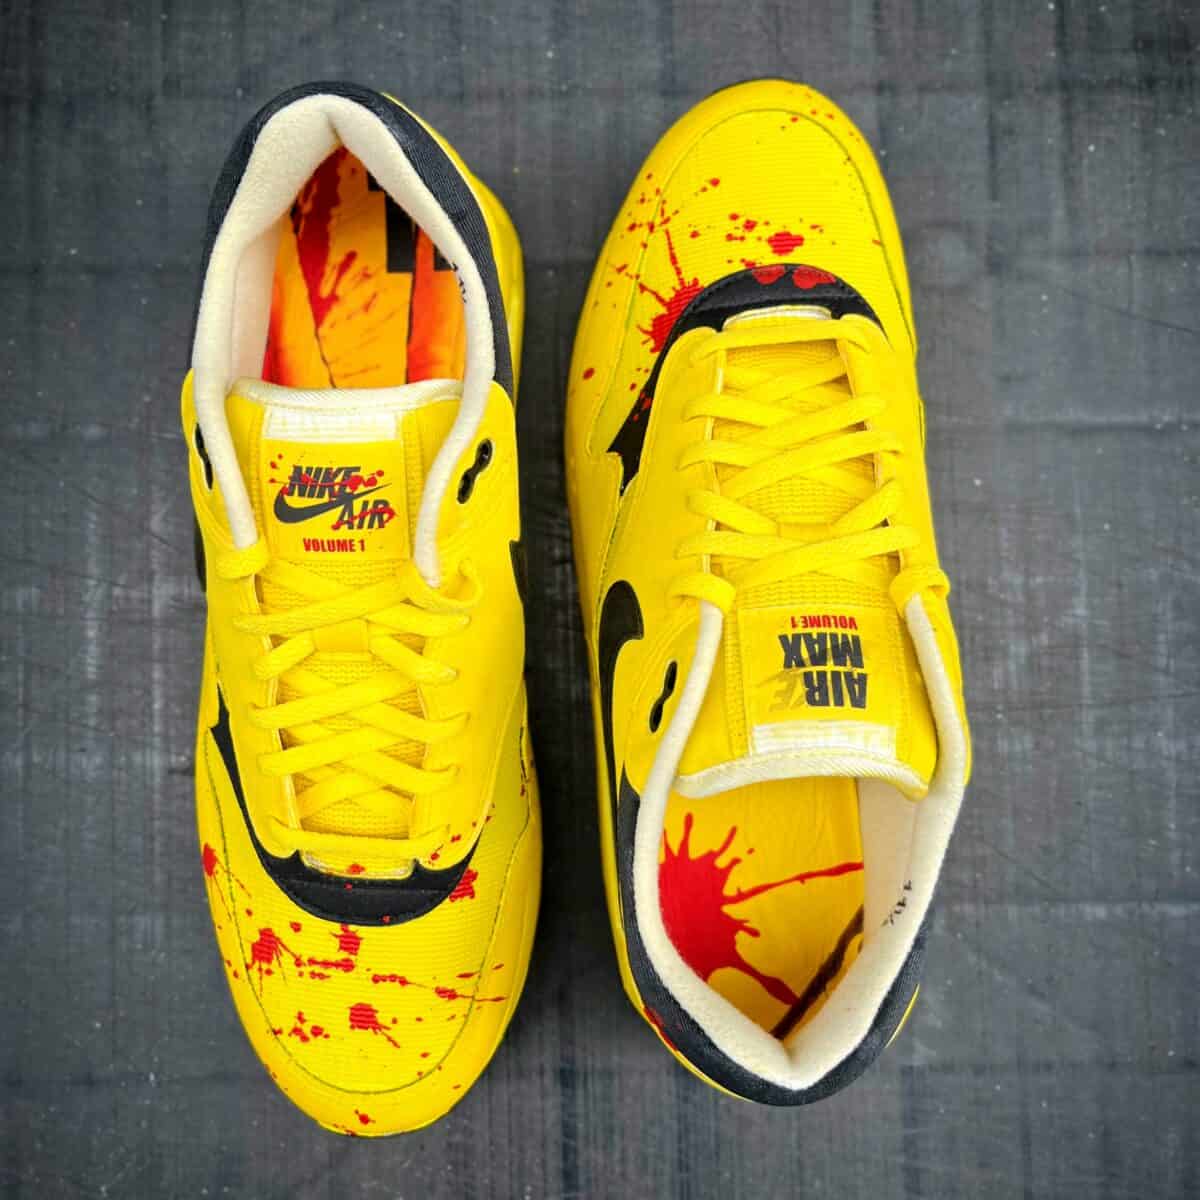 Kill Bill sneakers